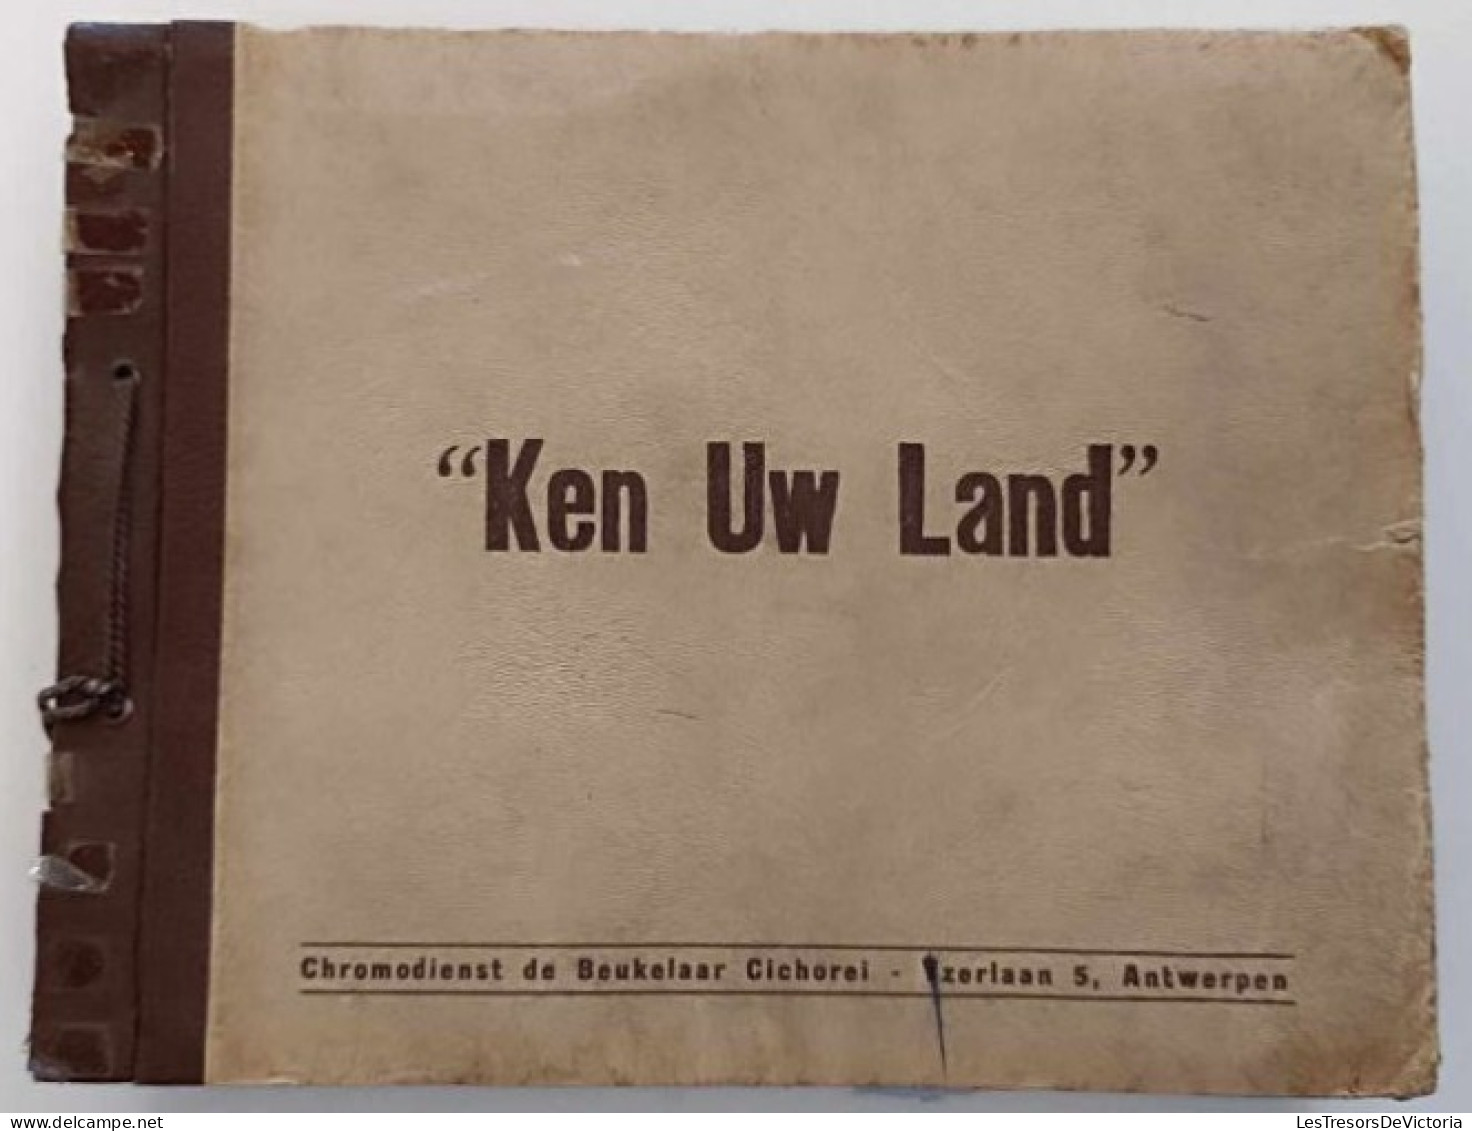 Chromos - Ken Uw Land - Chromodienst De Beukelaar Cichorei - Antwerpen - Livre De Chromos Sur La Belgique - Albums & Katalogus